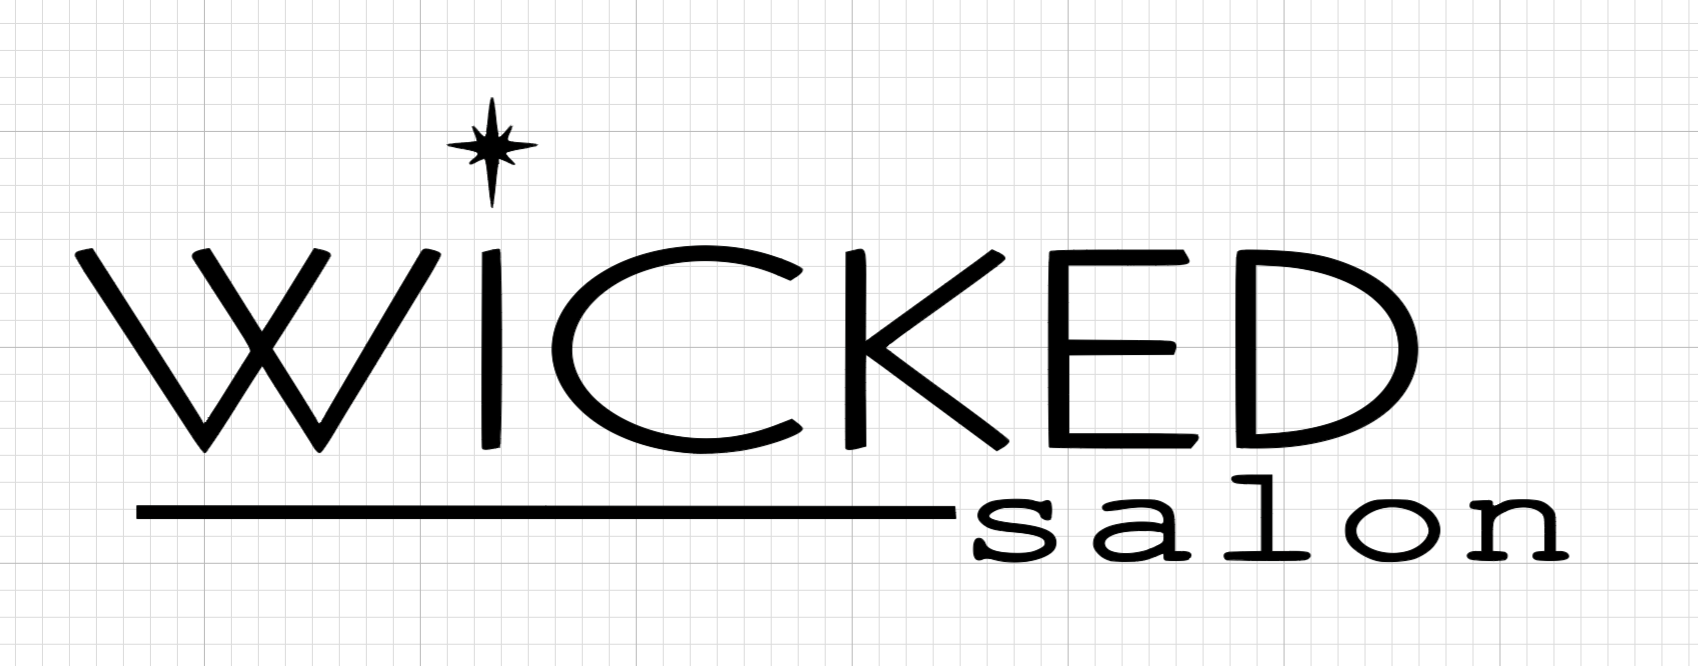 Wicked salon logo